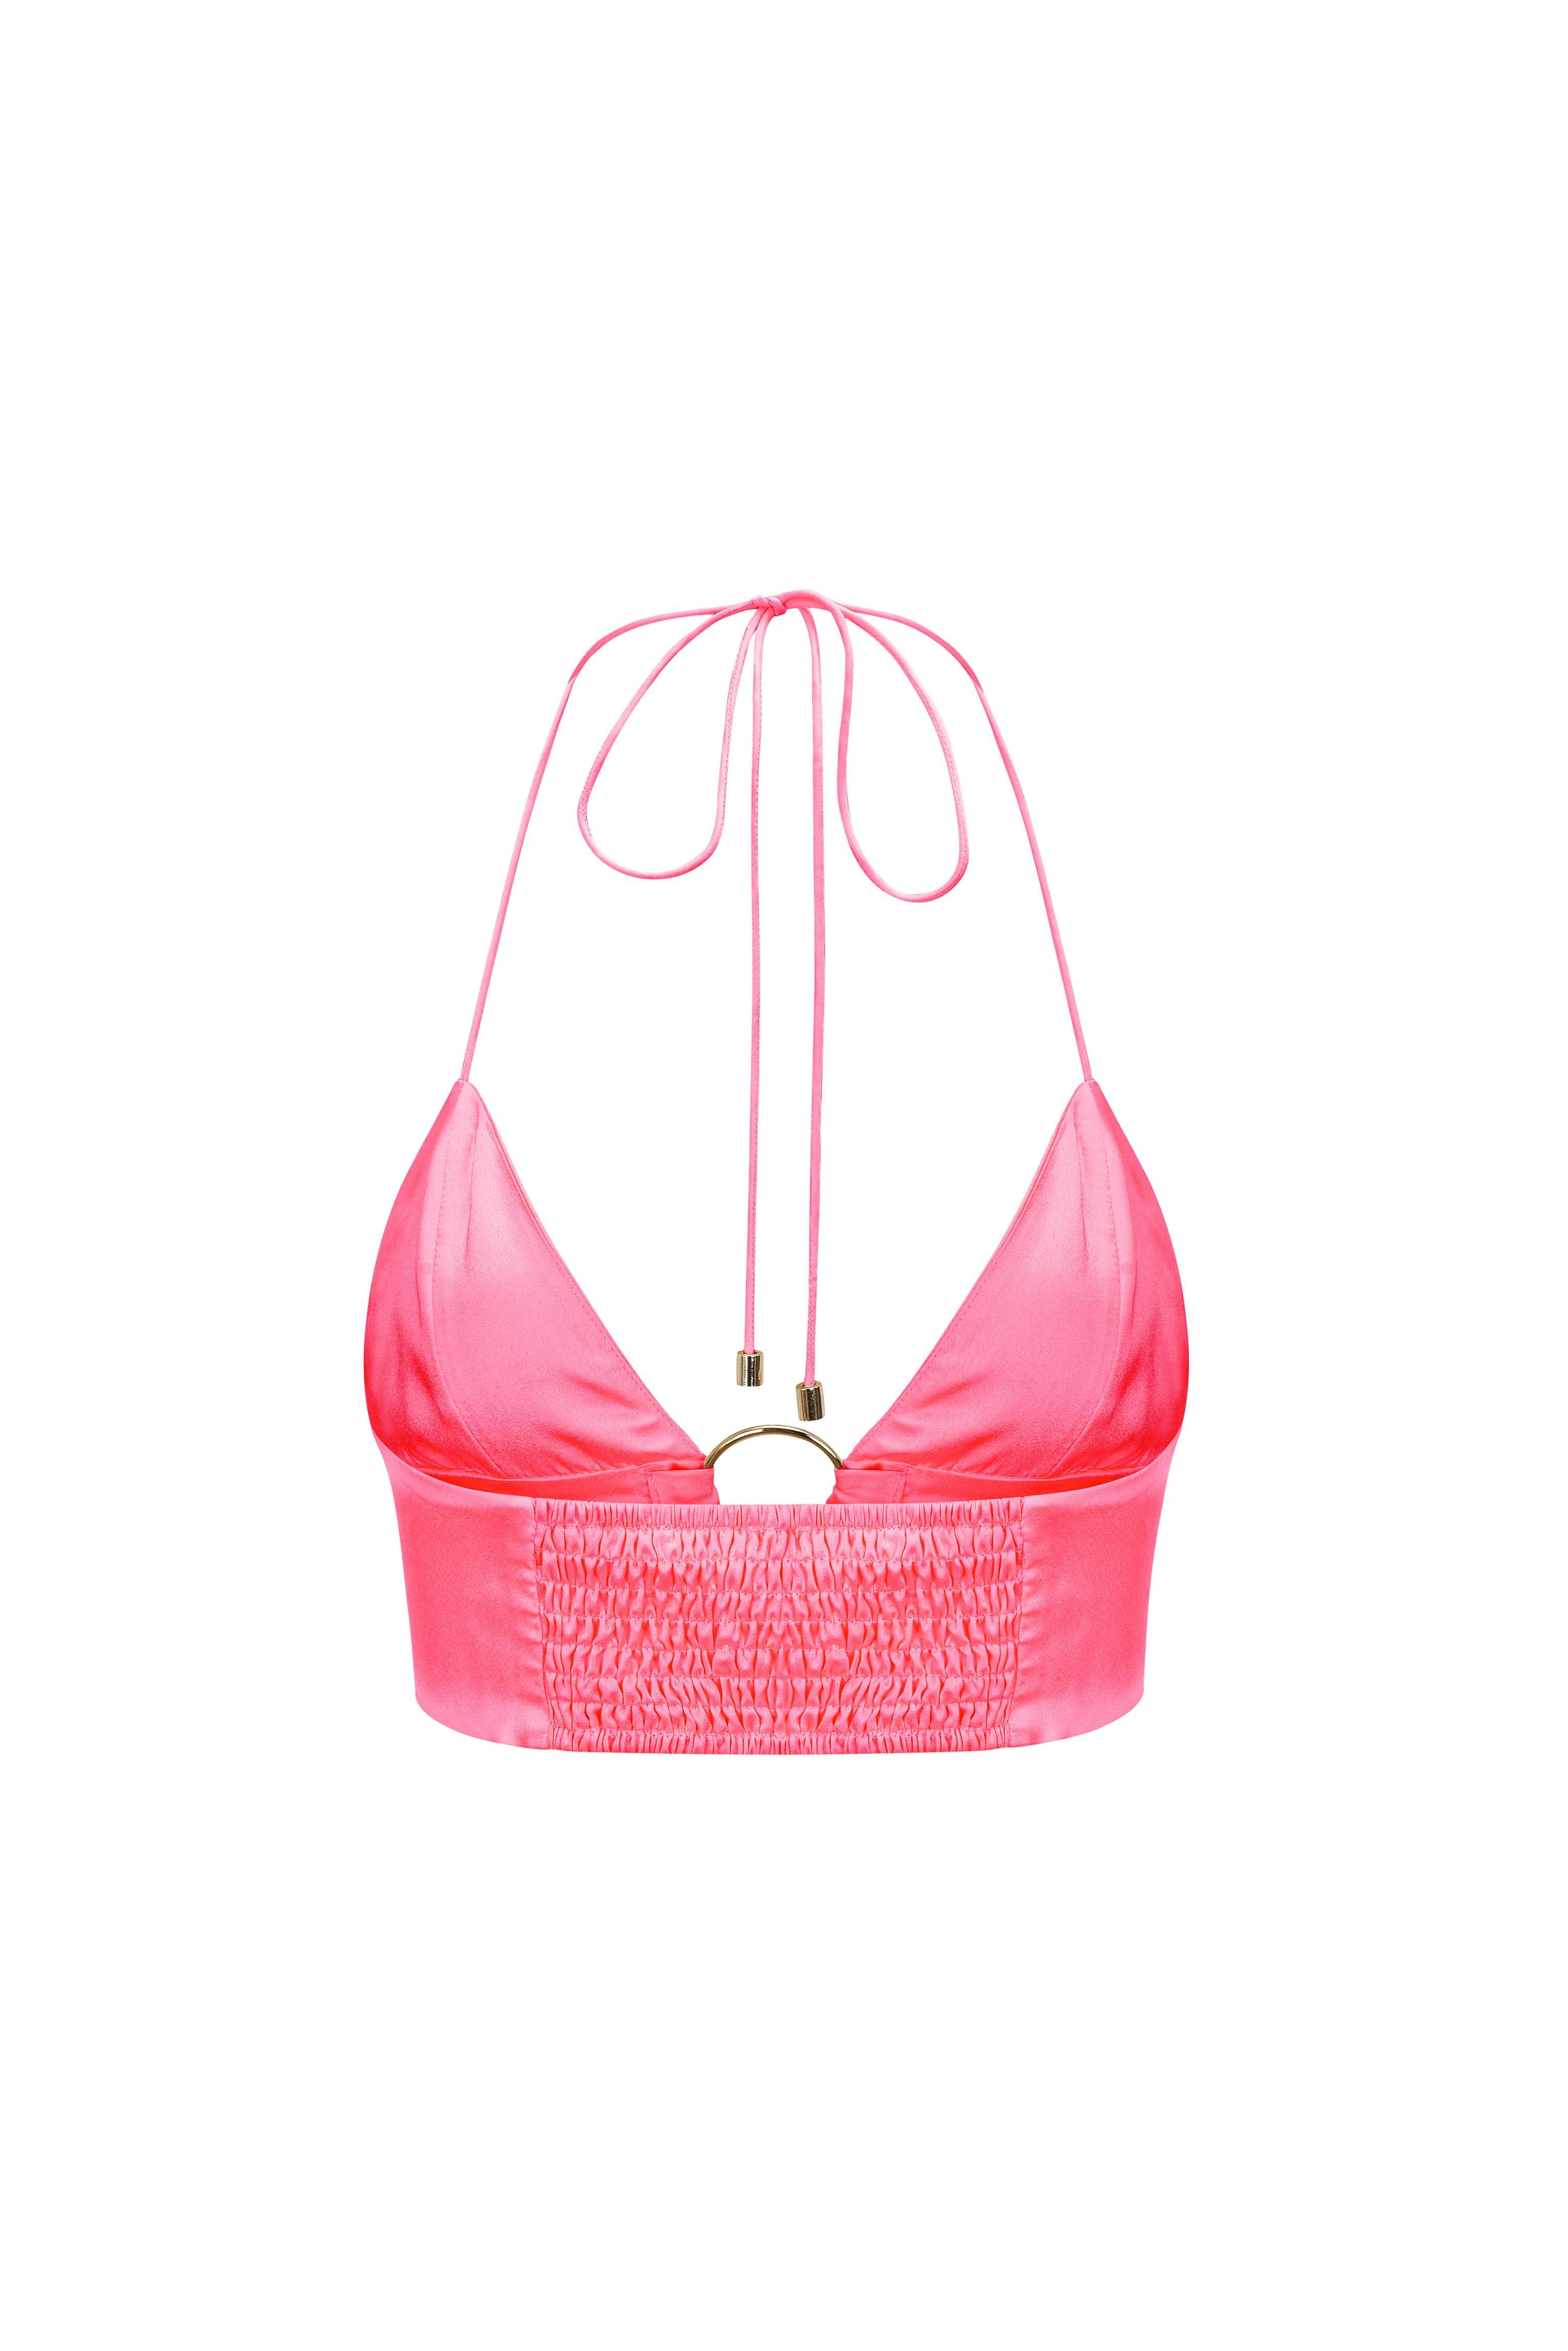 Ibiza Pink Satin Halter-neck Bralette Crop Top | AMYLYNN